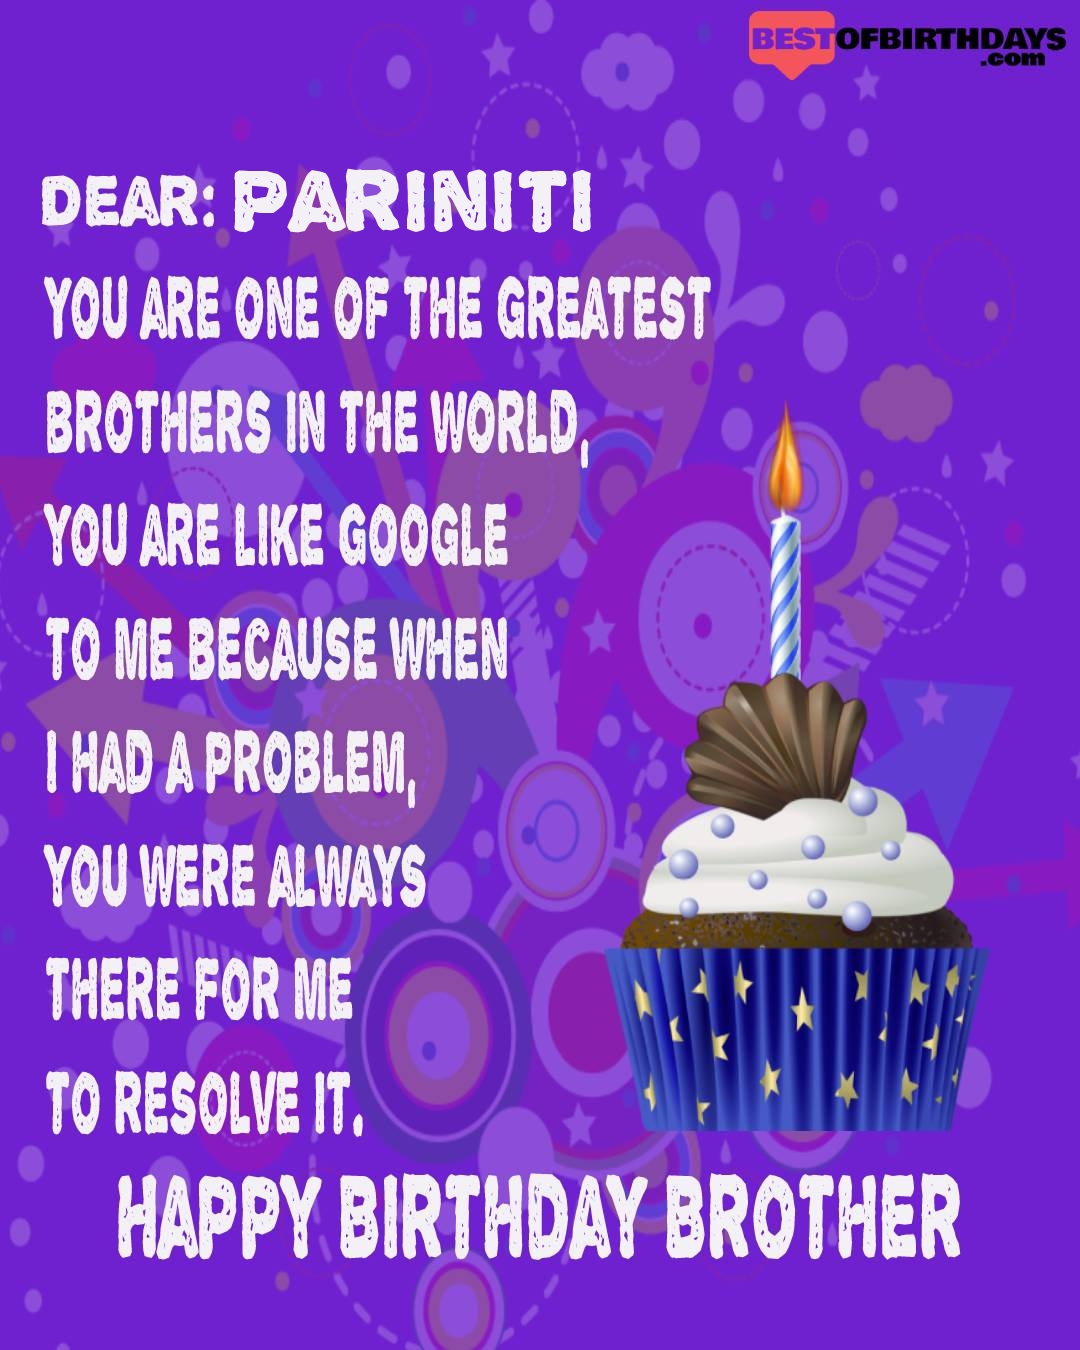 Happy birthday pariniti bhai brother bro